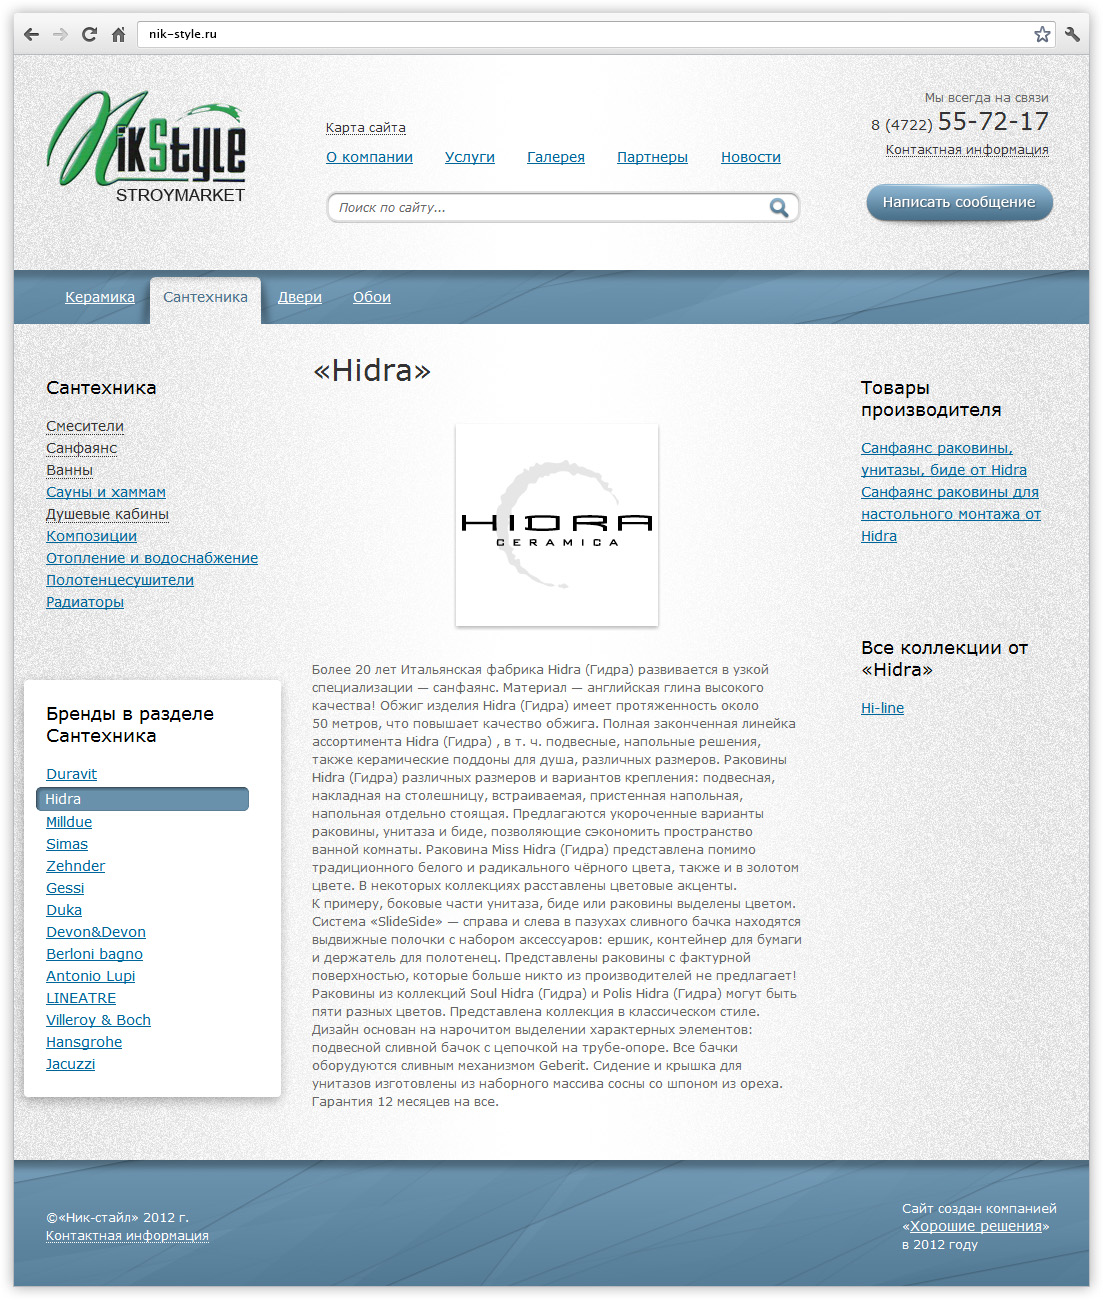 Разработка сайта Никстайл - скрин описания бренда